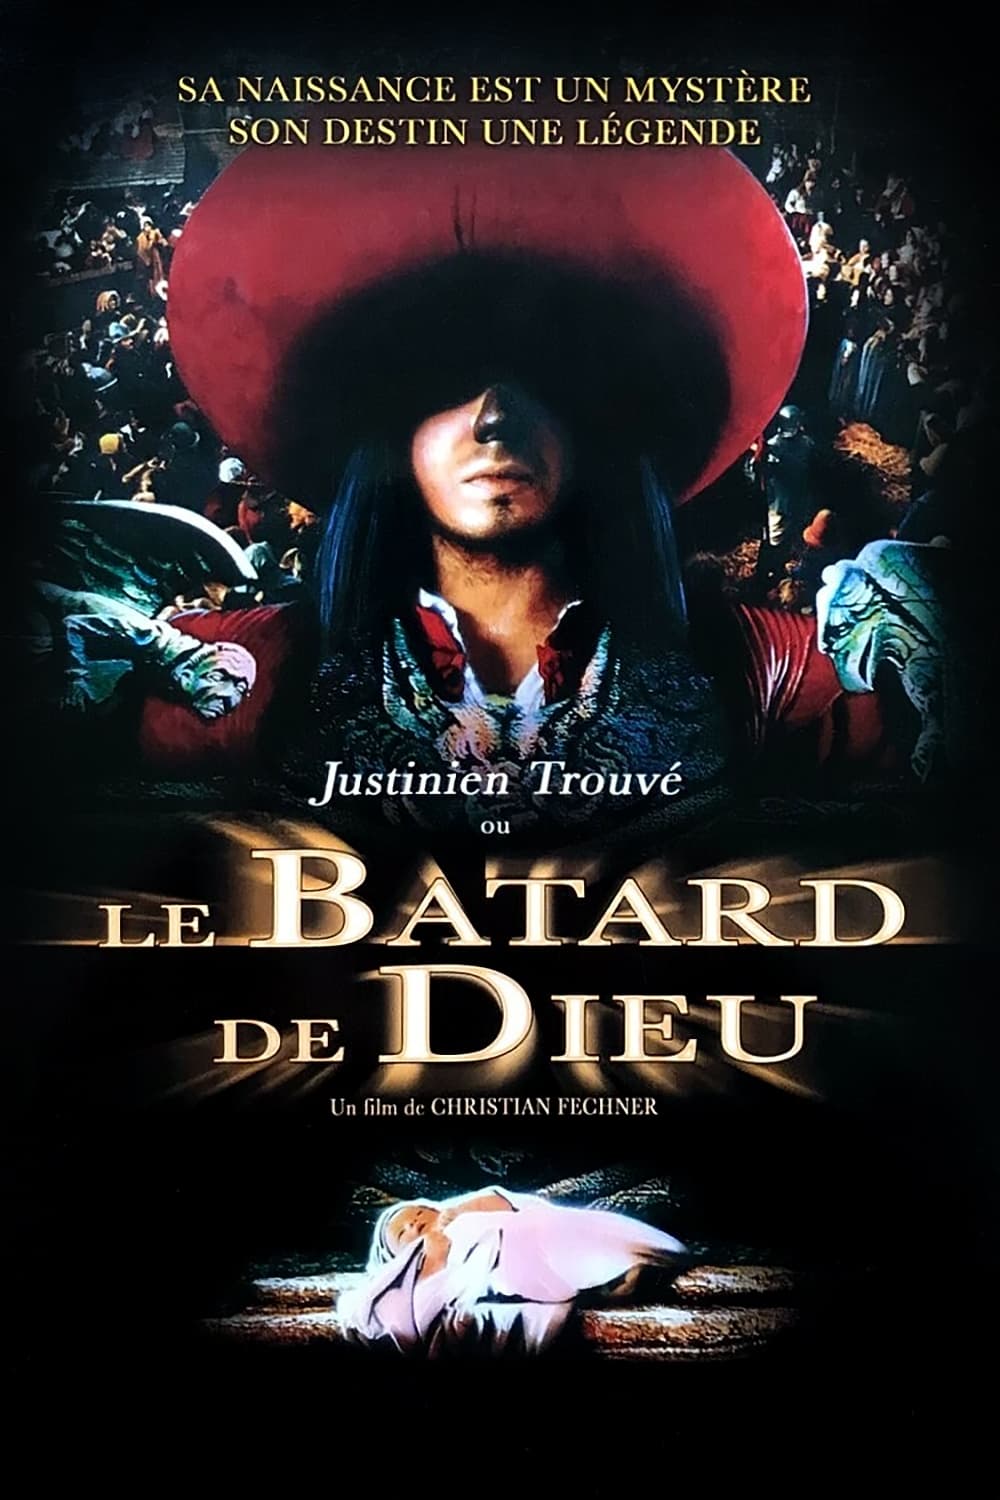 Justinien Trouve, or God's Bastard (1993)